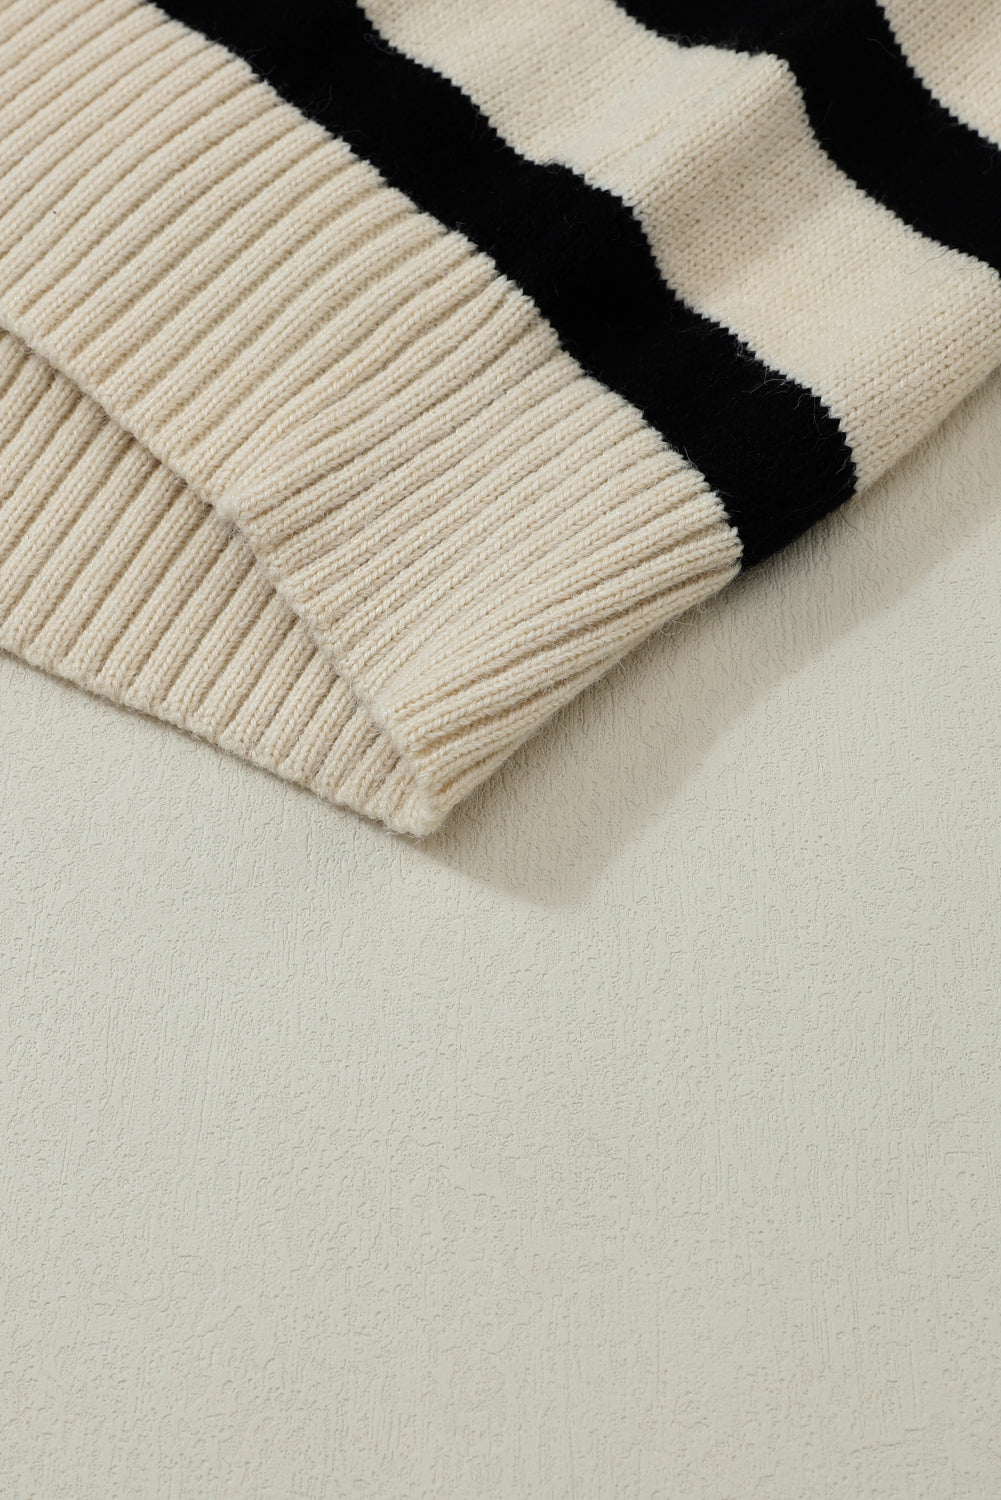 Black Striped Knit Drop Shoulder Collared V Neck Sweater